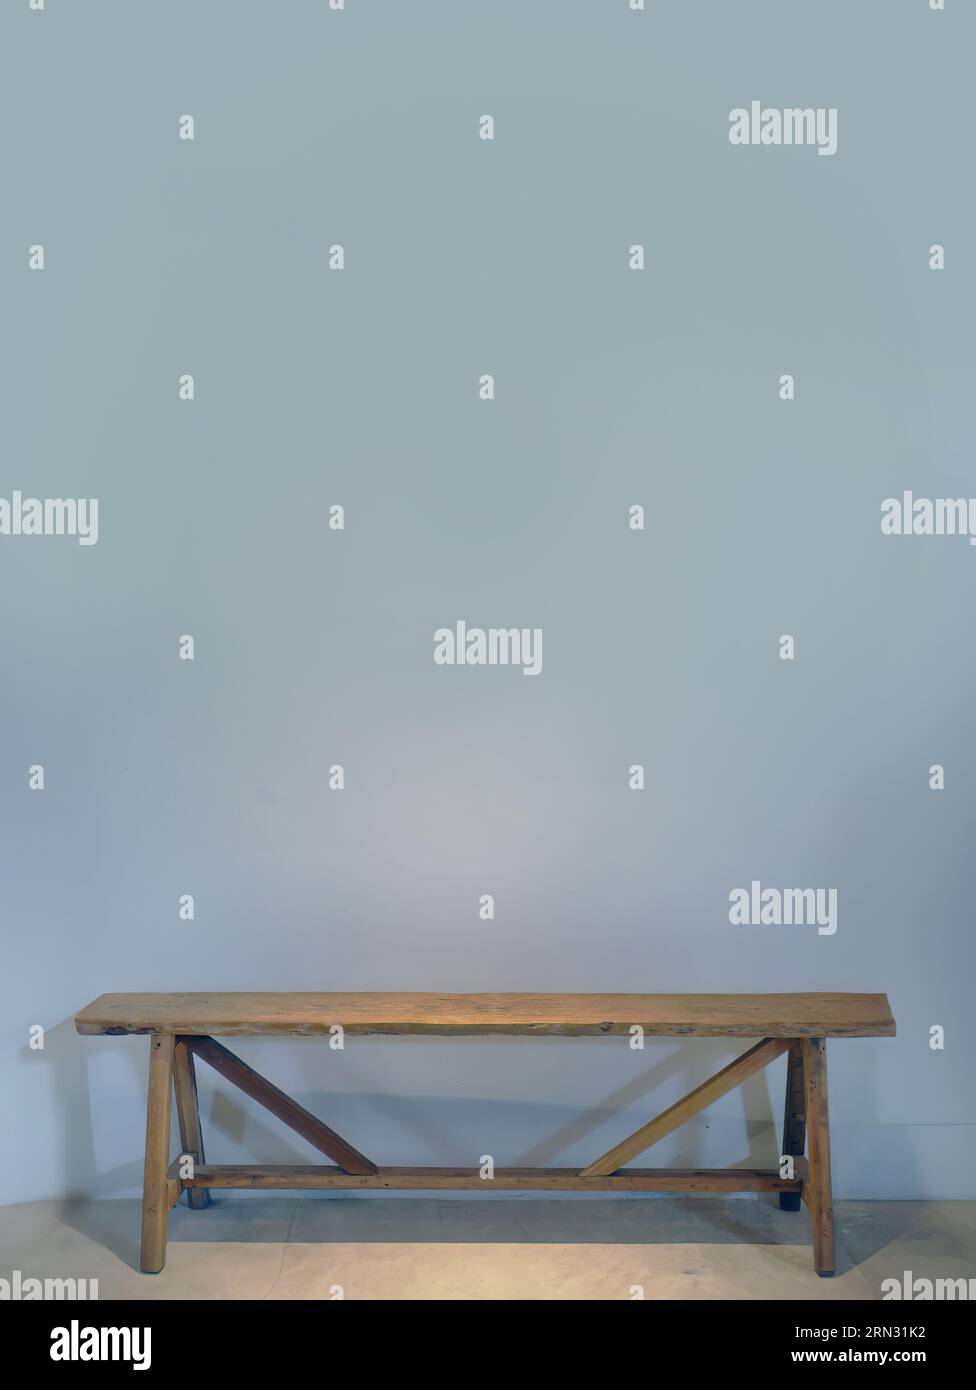 Eine leere blaue graue Farbwand mit einer Holzbank an der Wand, gepunktete Beleuchtung von oben, leerer Platz für Kopien oder Texteinfügungen, Grafikressourcen Stockfoto